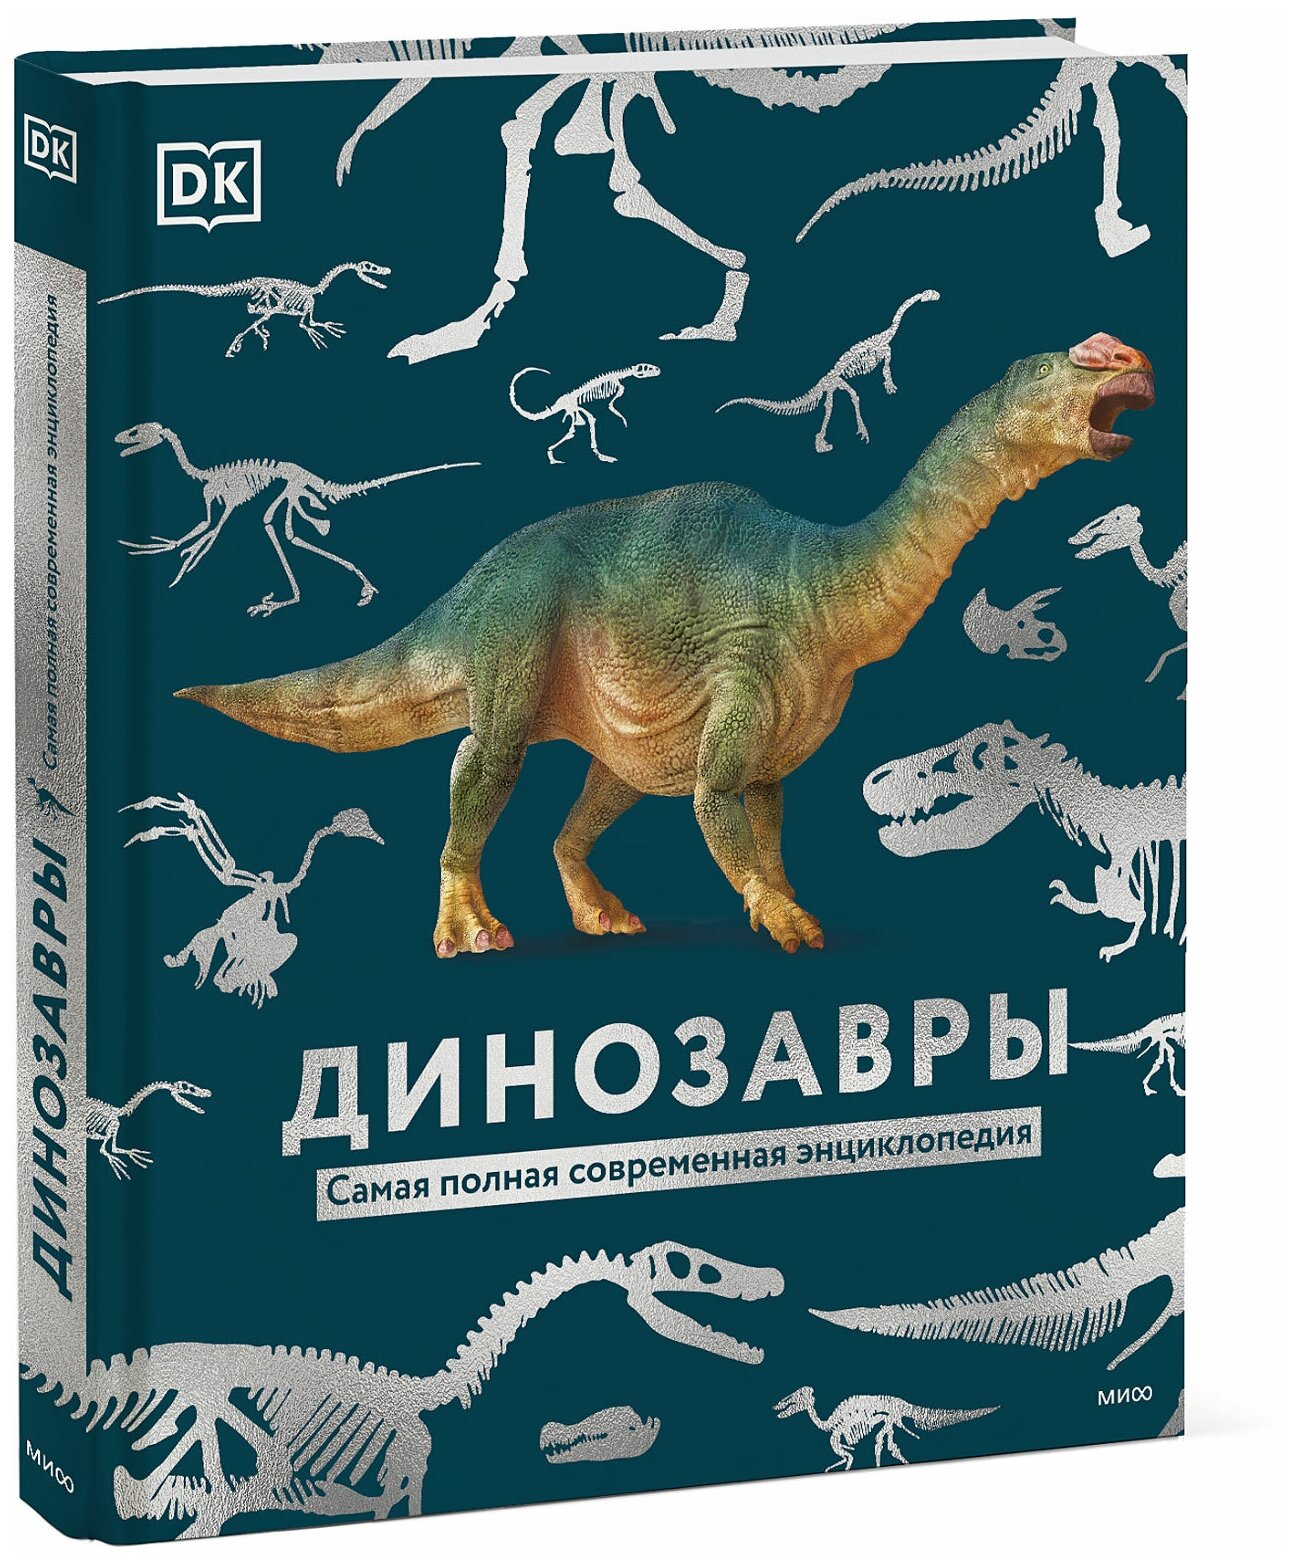 Dorling Kindersley (DK), Smithsonian Institution. Динозавры. Самая полная современная энциклопедия